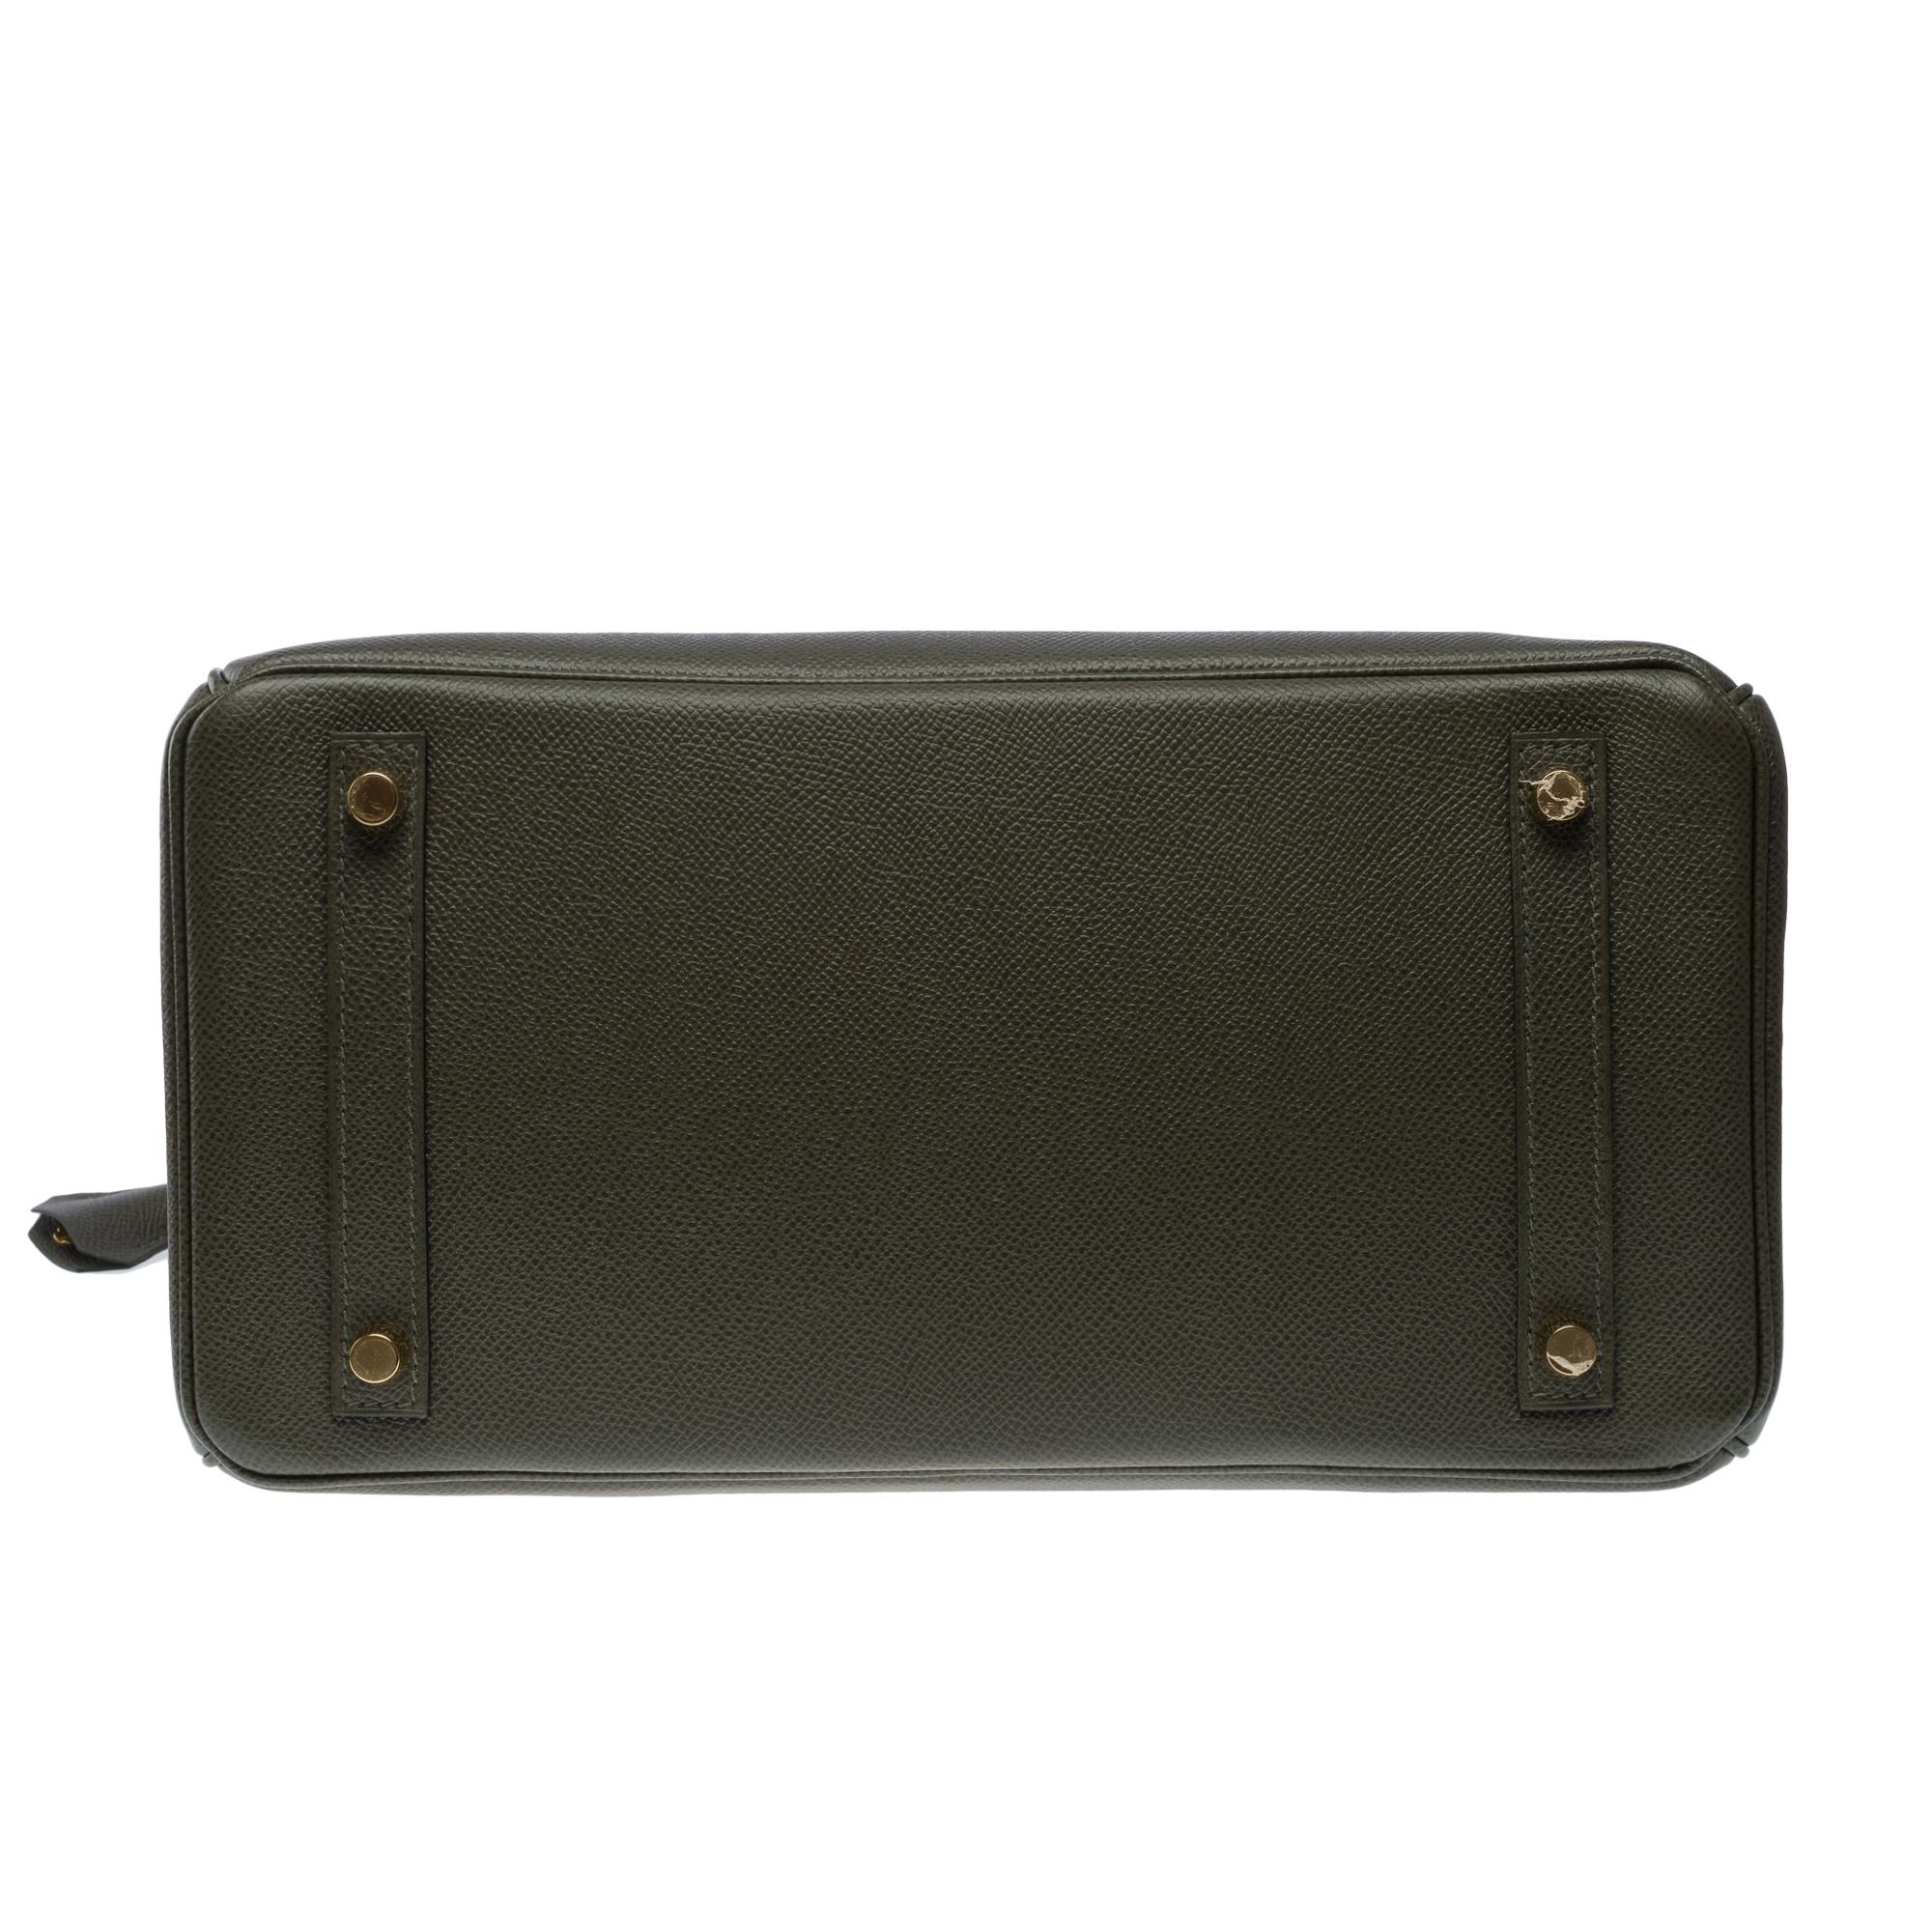 Splendid Hermes Birkin 30 handbag in Vert de Gris Epsom leather, SHW For Sale 5